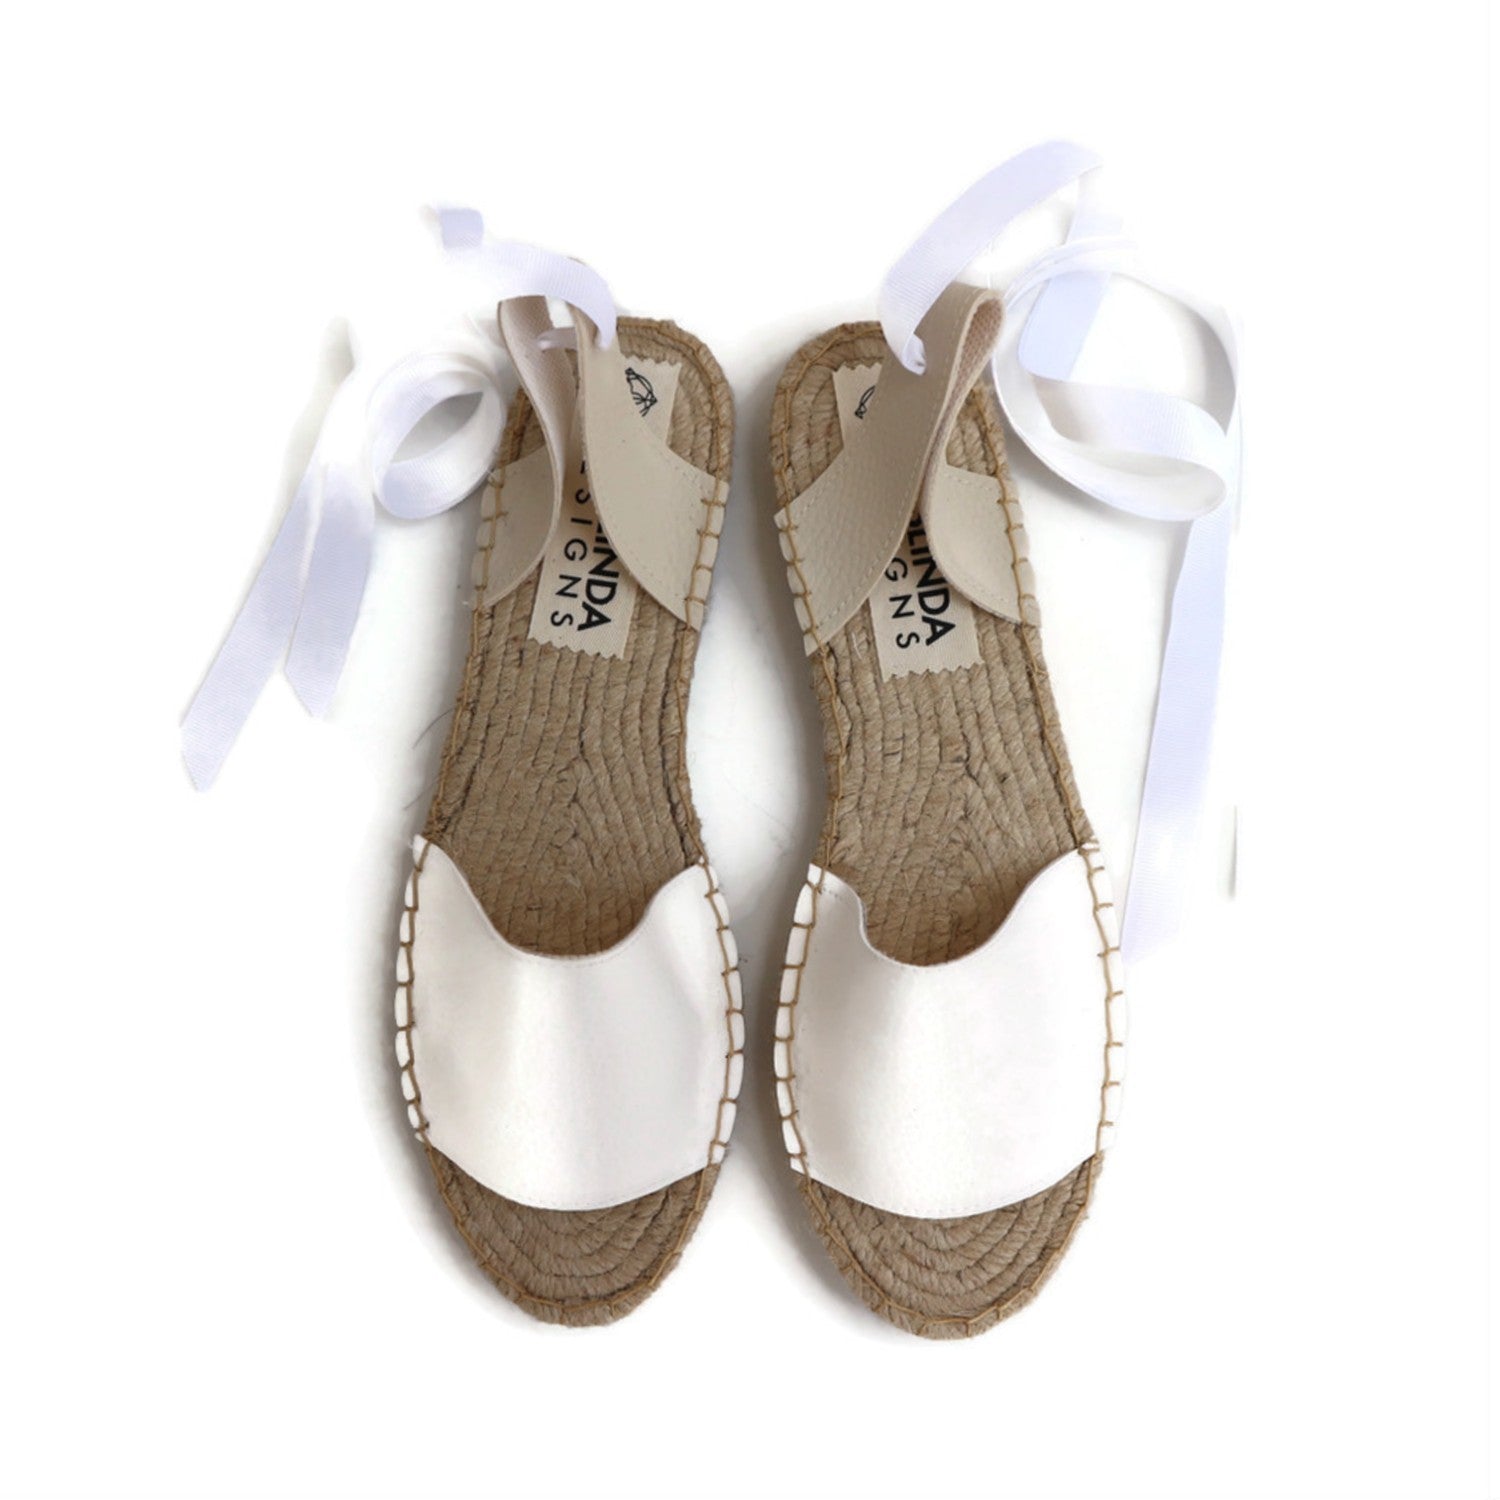 Vegan Espadrilles Sandals - White - Classic Sole - Maslinda Designs